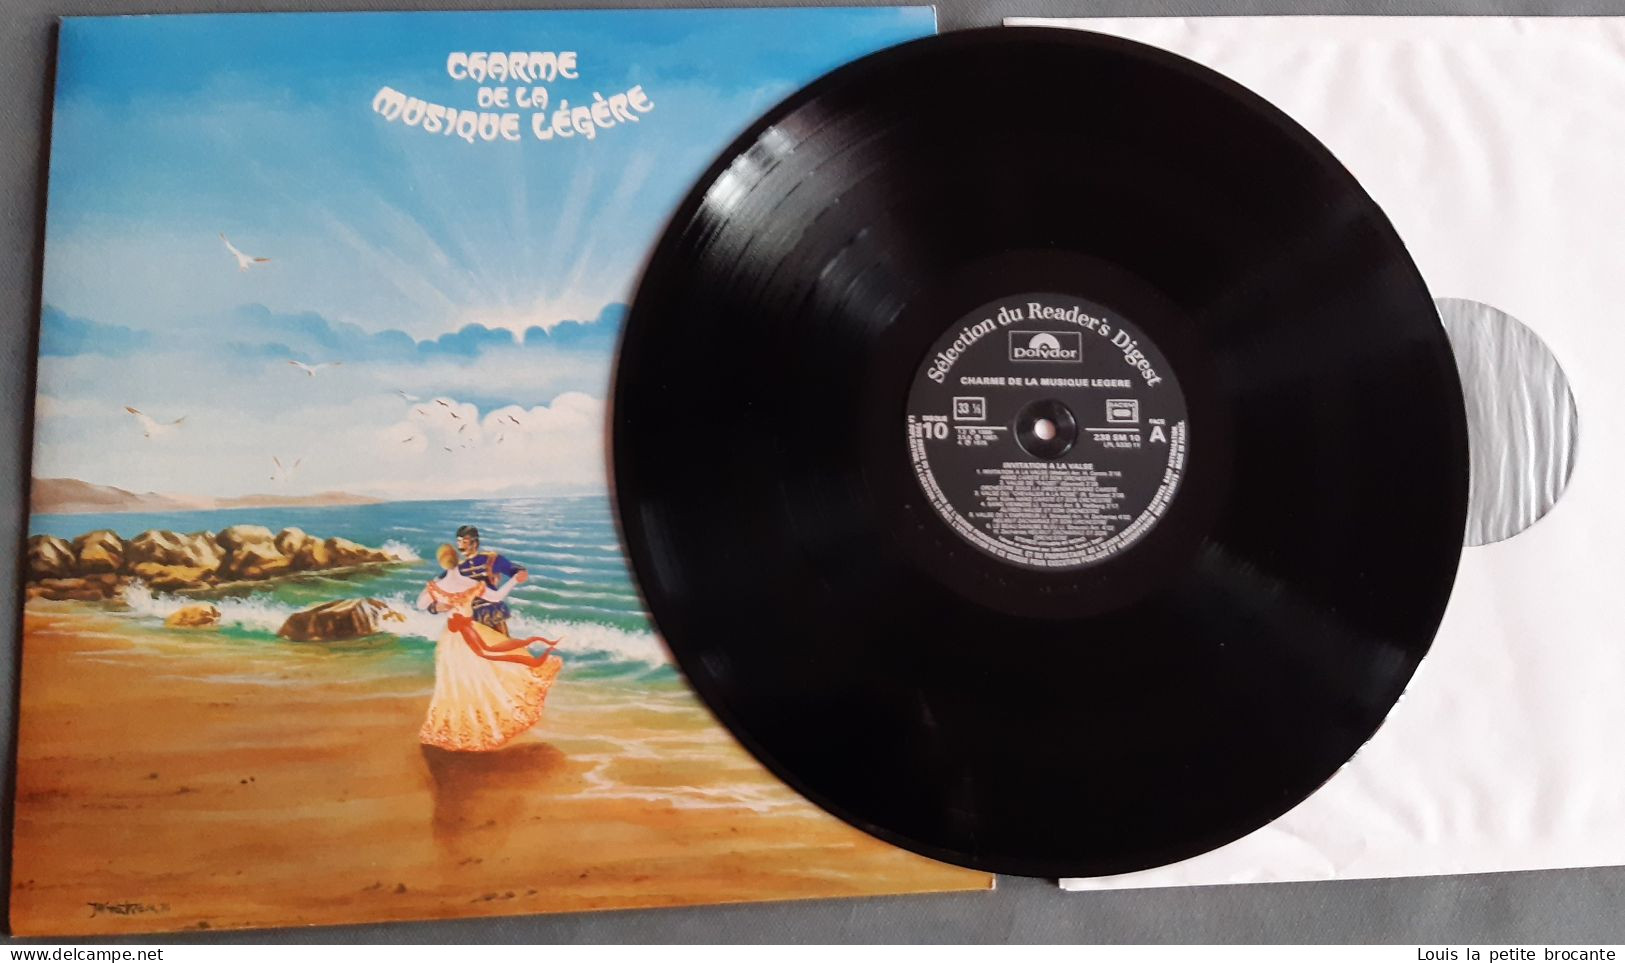 Coffret de 12 disques vinyles "Charme de la Musique Légère", 33 tours stéréo. POLYDOR, Sélection du Reader's Digest 1979